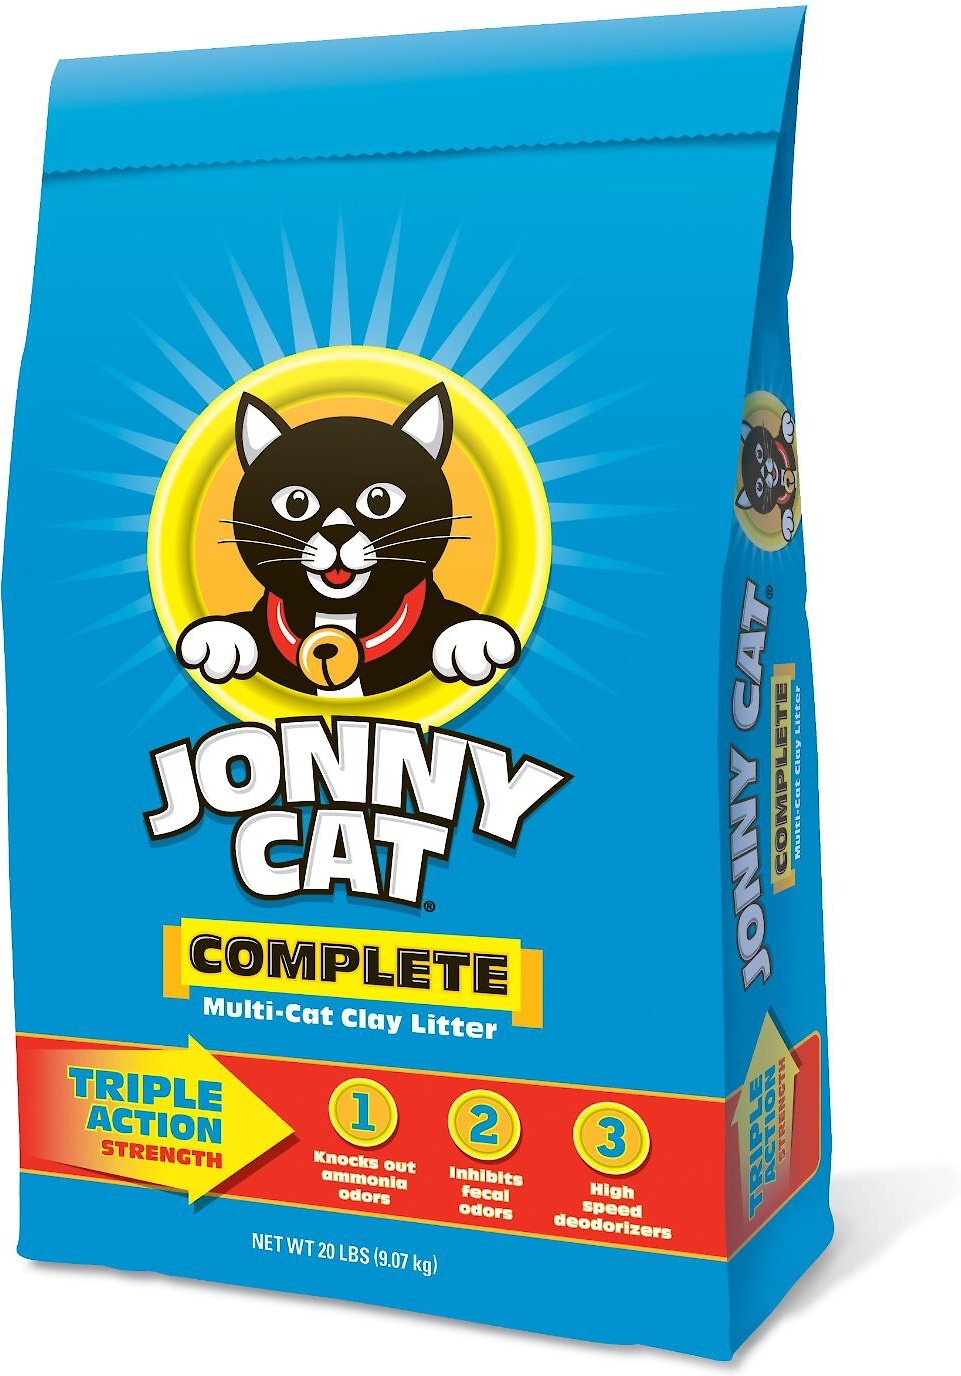 Jonny Cat Complete MultiCat Clay Cat Litter, 20lb bag